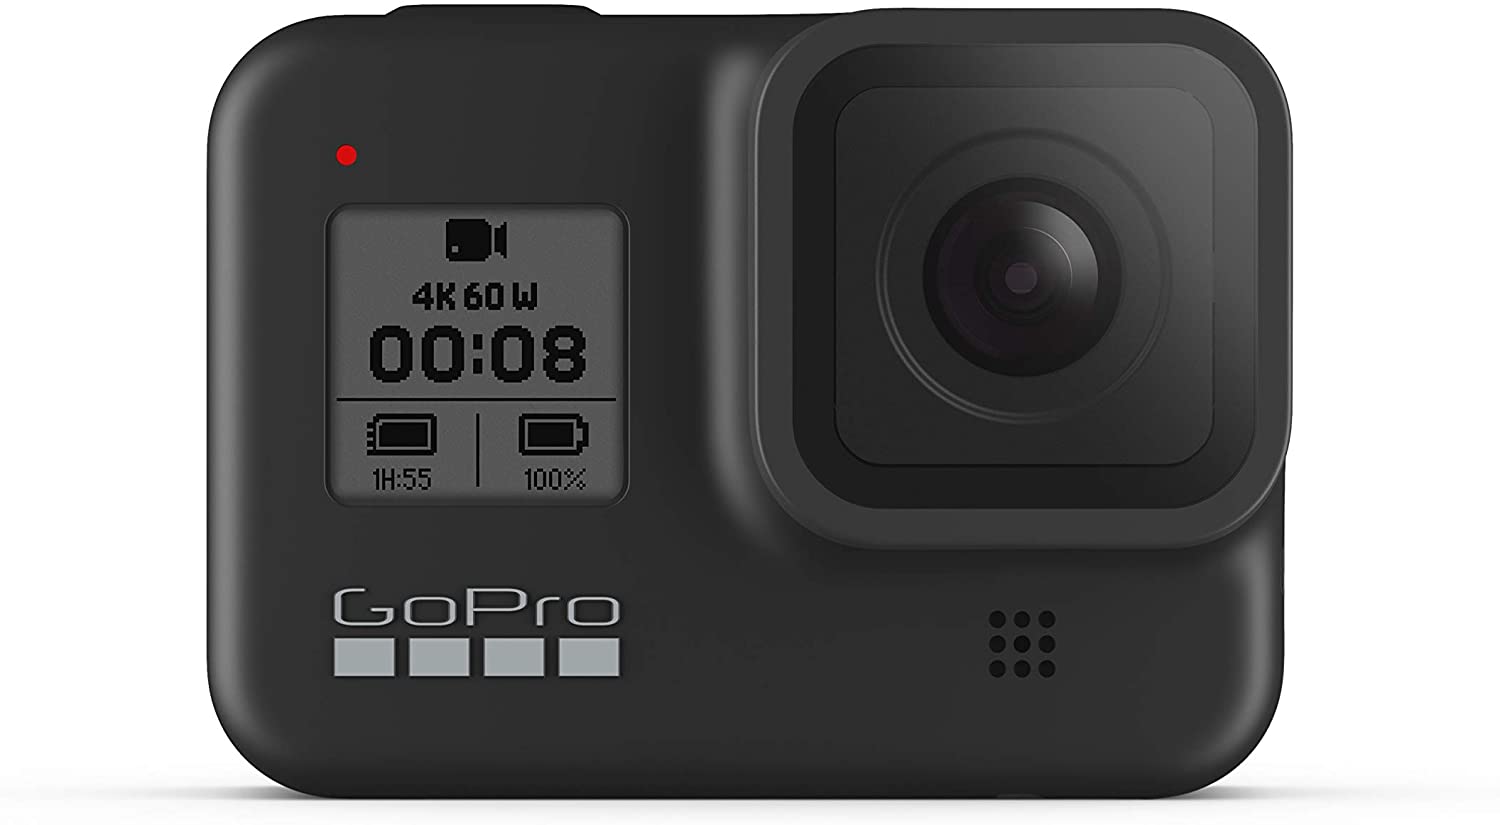 GoPro HERO8 Black - Fotocamera digitale impermeabile 4K con stabilizzazione ipersfondata, touch screen e controllo vocale - Streaming live HD, 12 MP